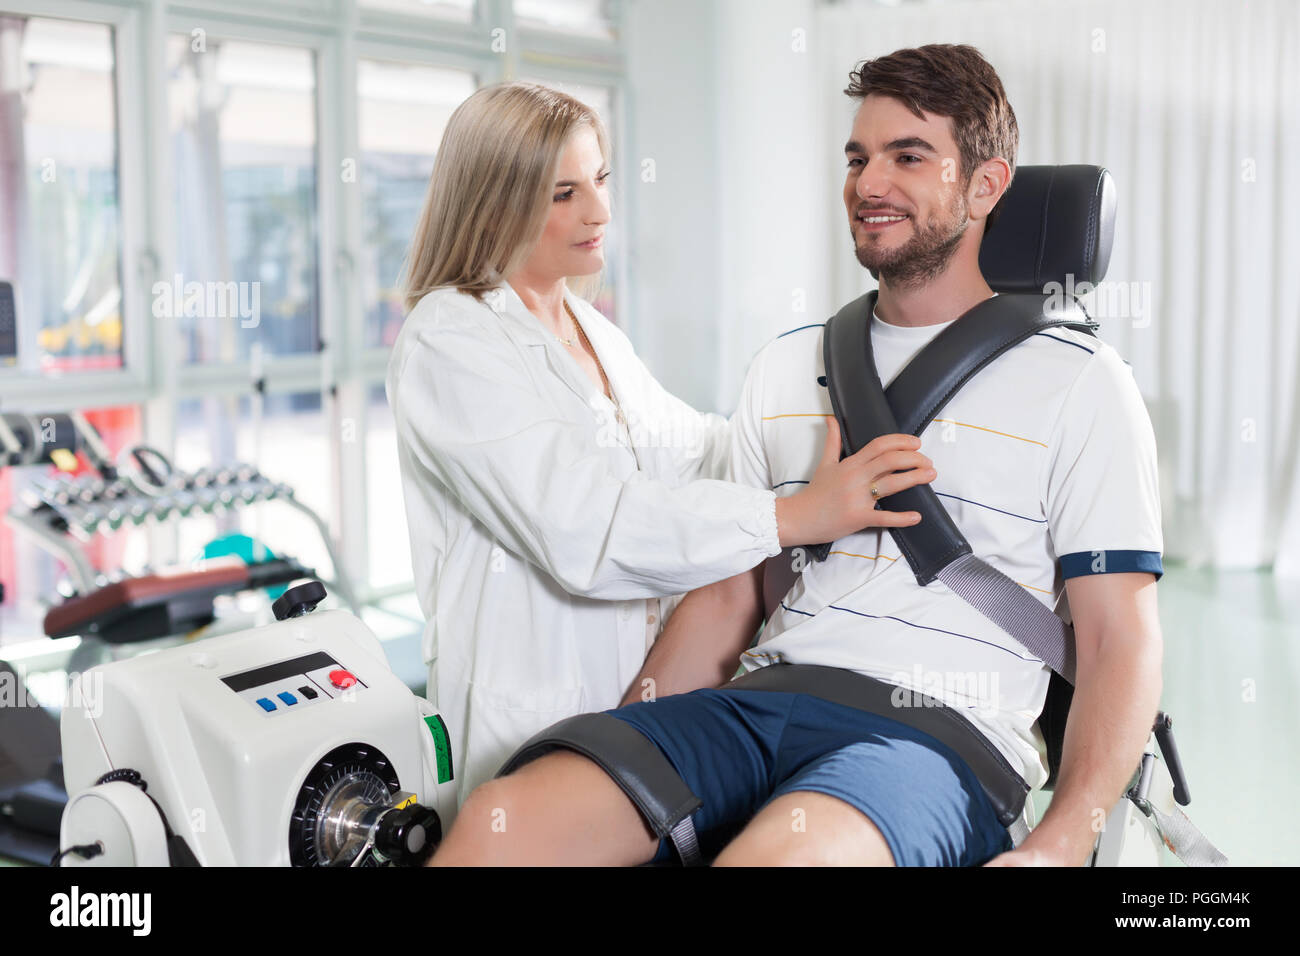 Patient de sexe masculin sur une machine de test isocinétique pour vérifier le fonctionnement de son genou Banque D'Images